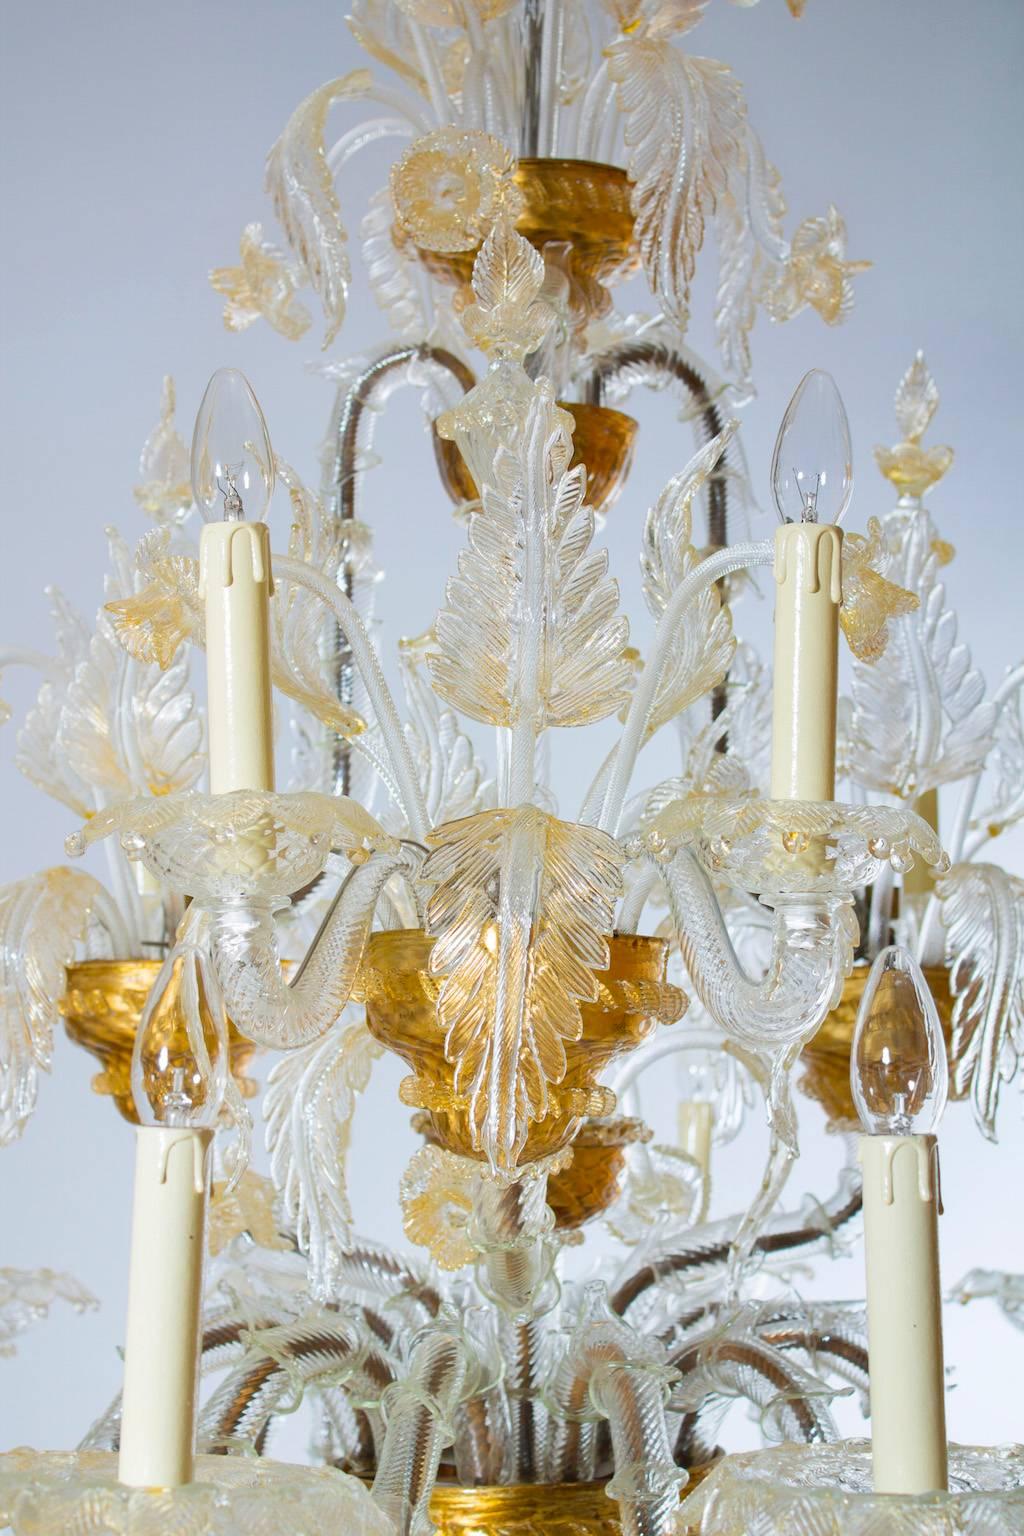 Mid-20th Century Italian Ca' Rezzonico Chandelier in Blown Murano Glass Gold 1950s